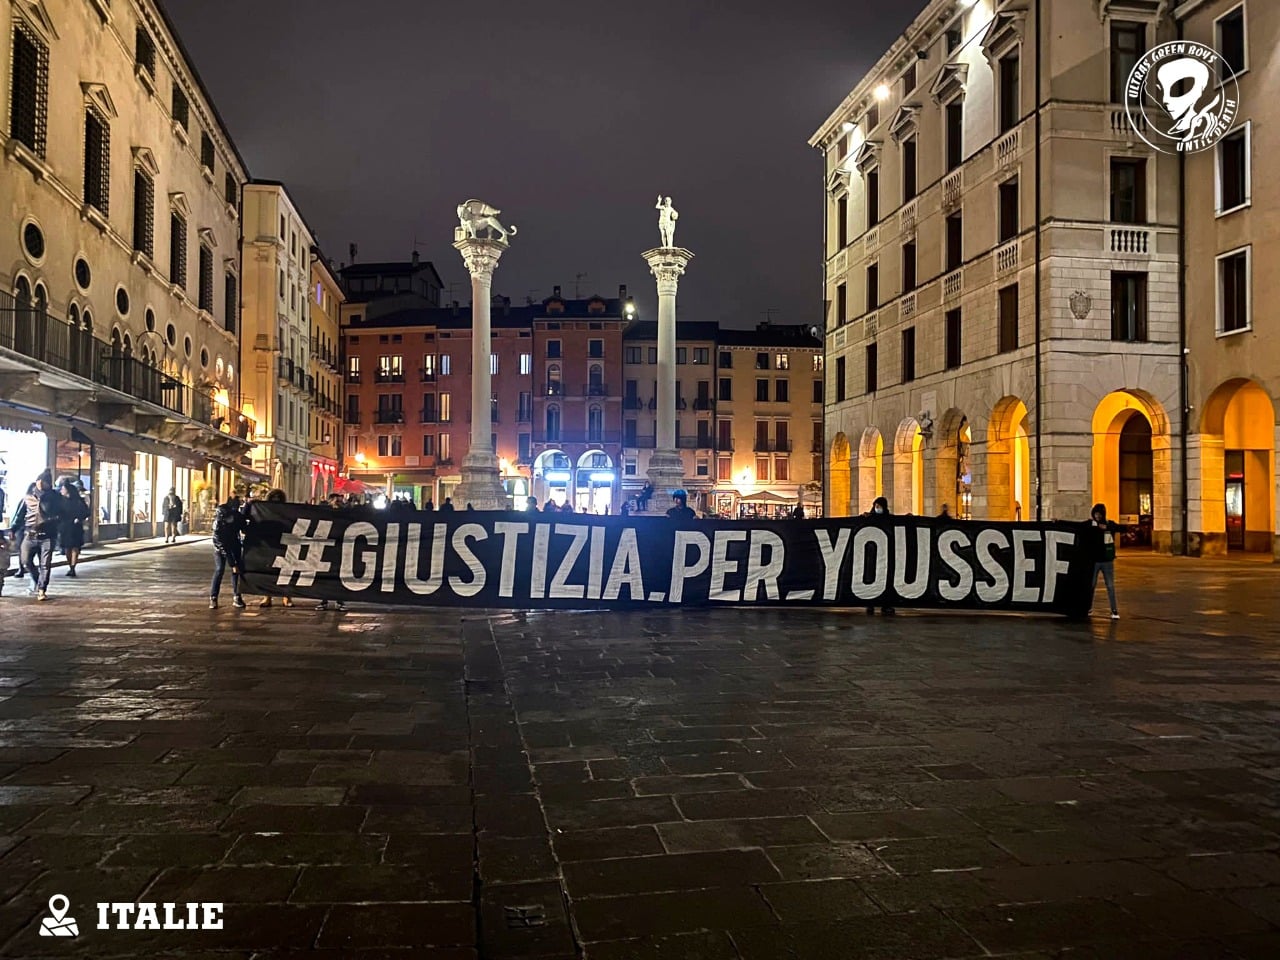 Une banderole de solidarité « Justice_pour_Youssef » déployée en Italie (Facebook/Green Boys)